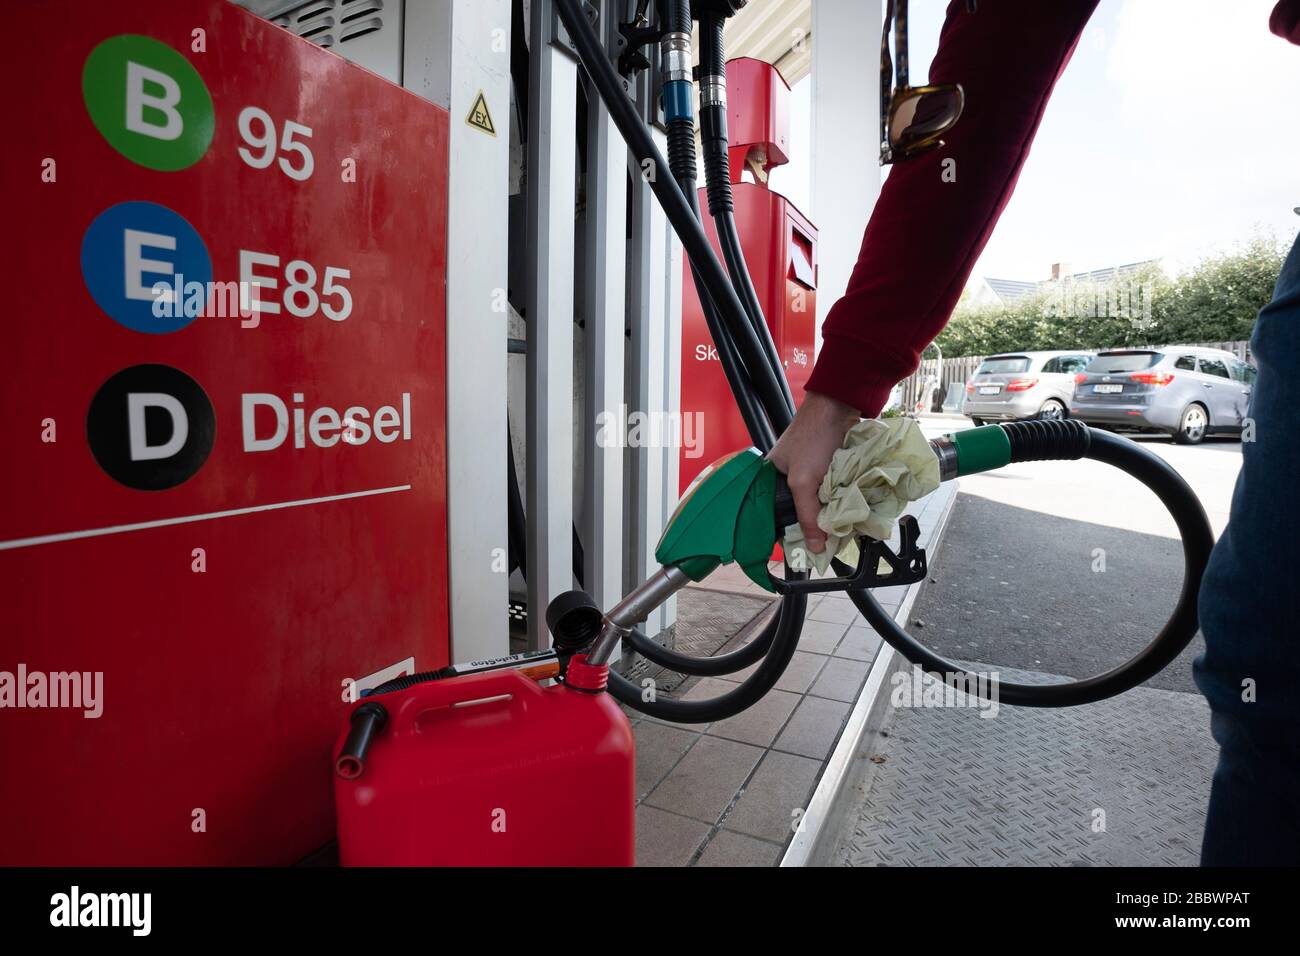 Personne remplissant un réservoir de carburant de jerrycan à une station-service Banque D'Images